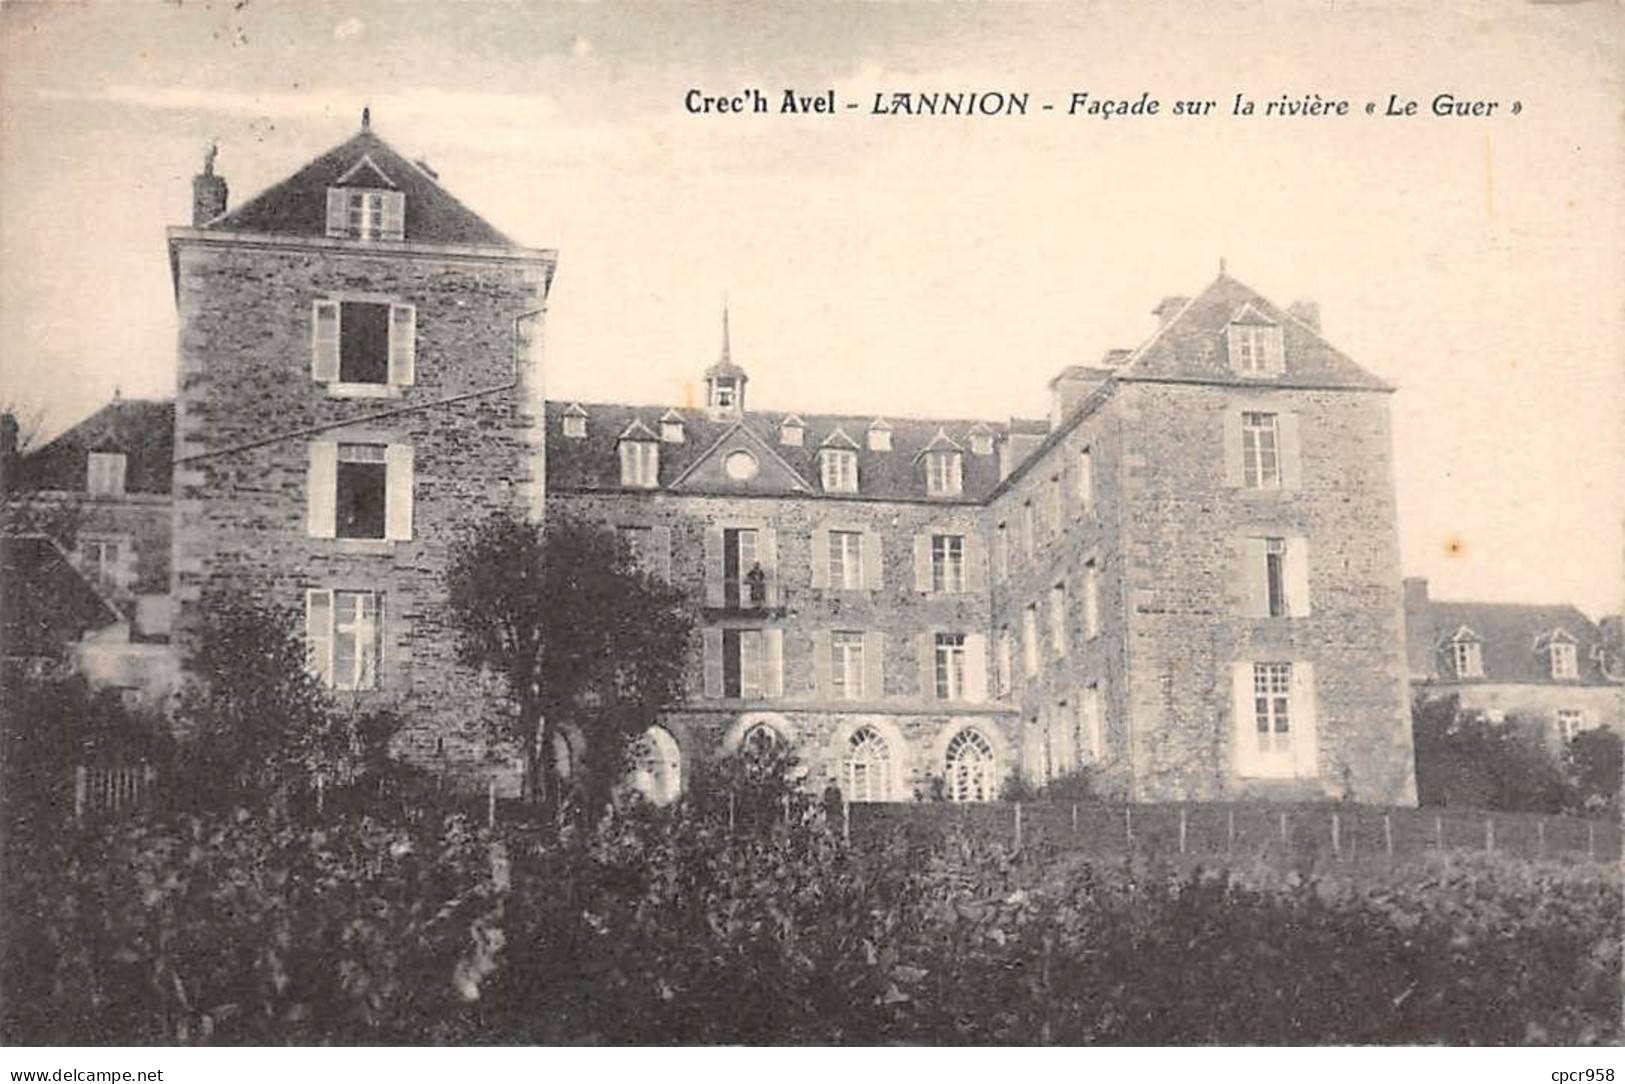 22 - LANNION - SAN42153 - Façade Sur La Rivière "Le Guer" - Crec'h Avel - Lannion